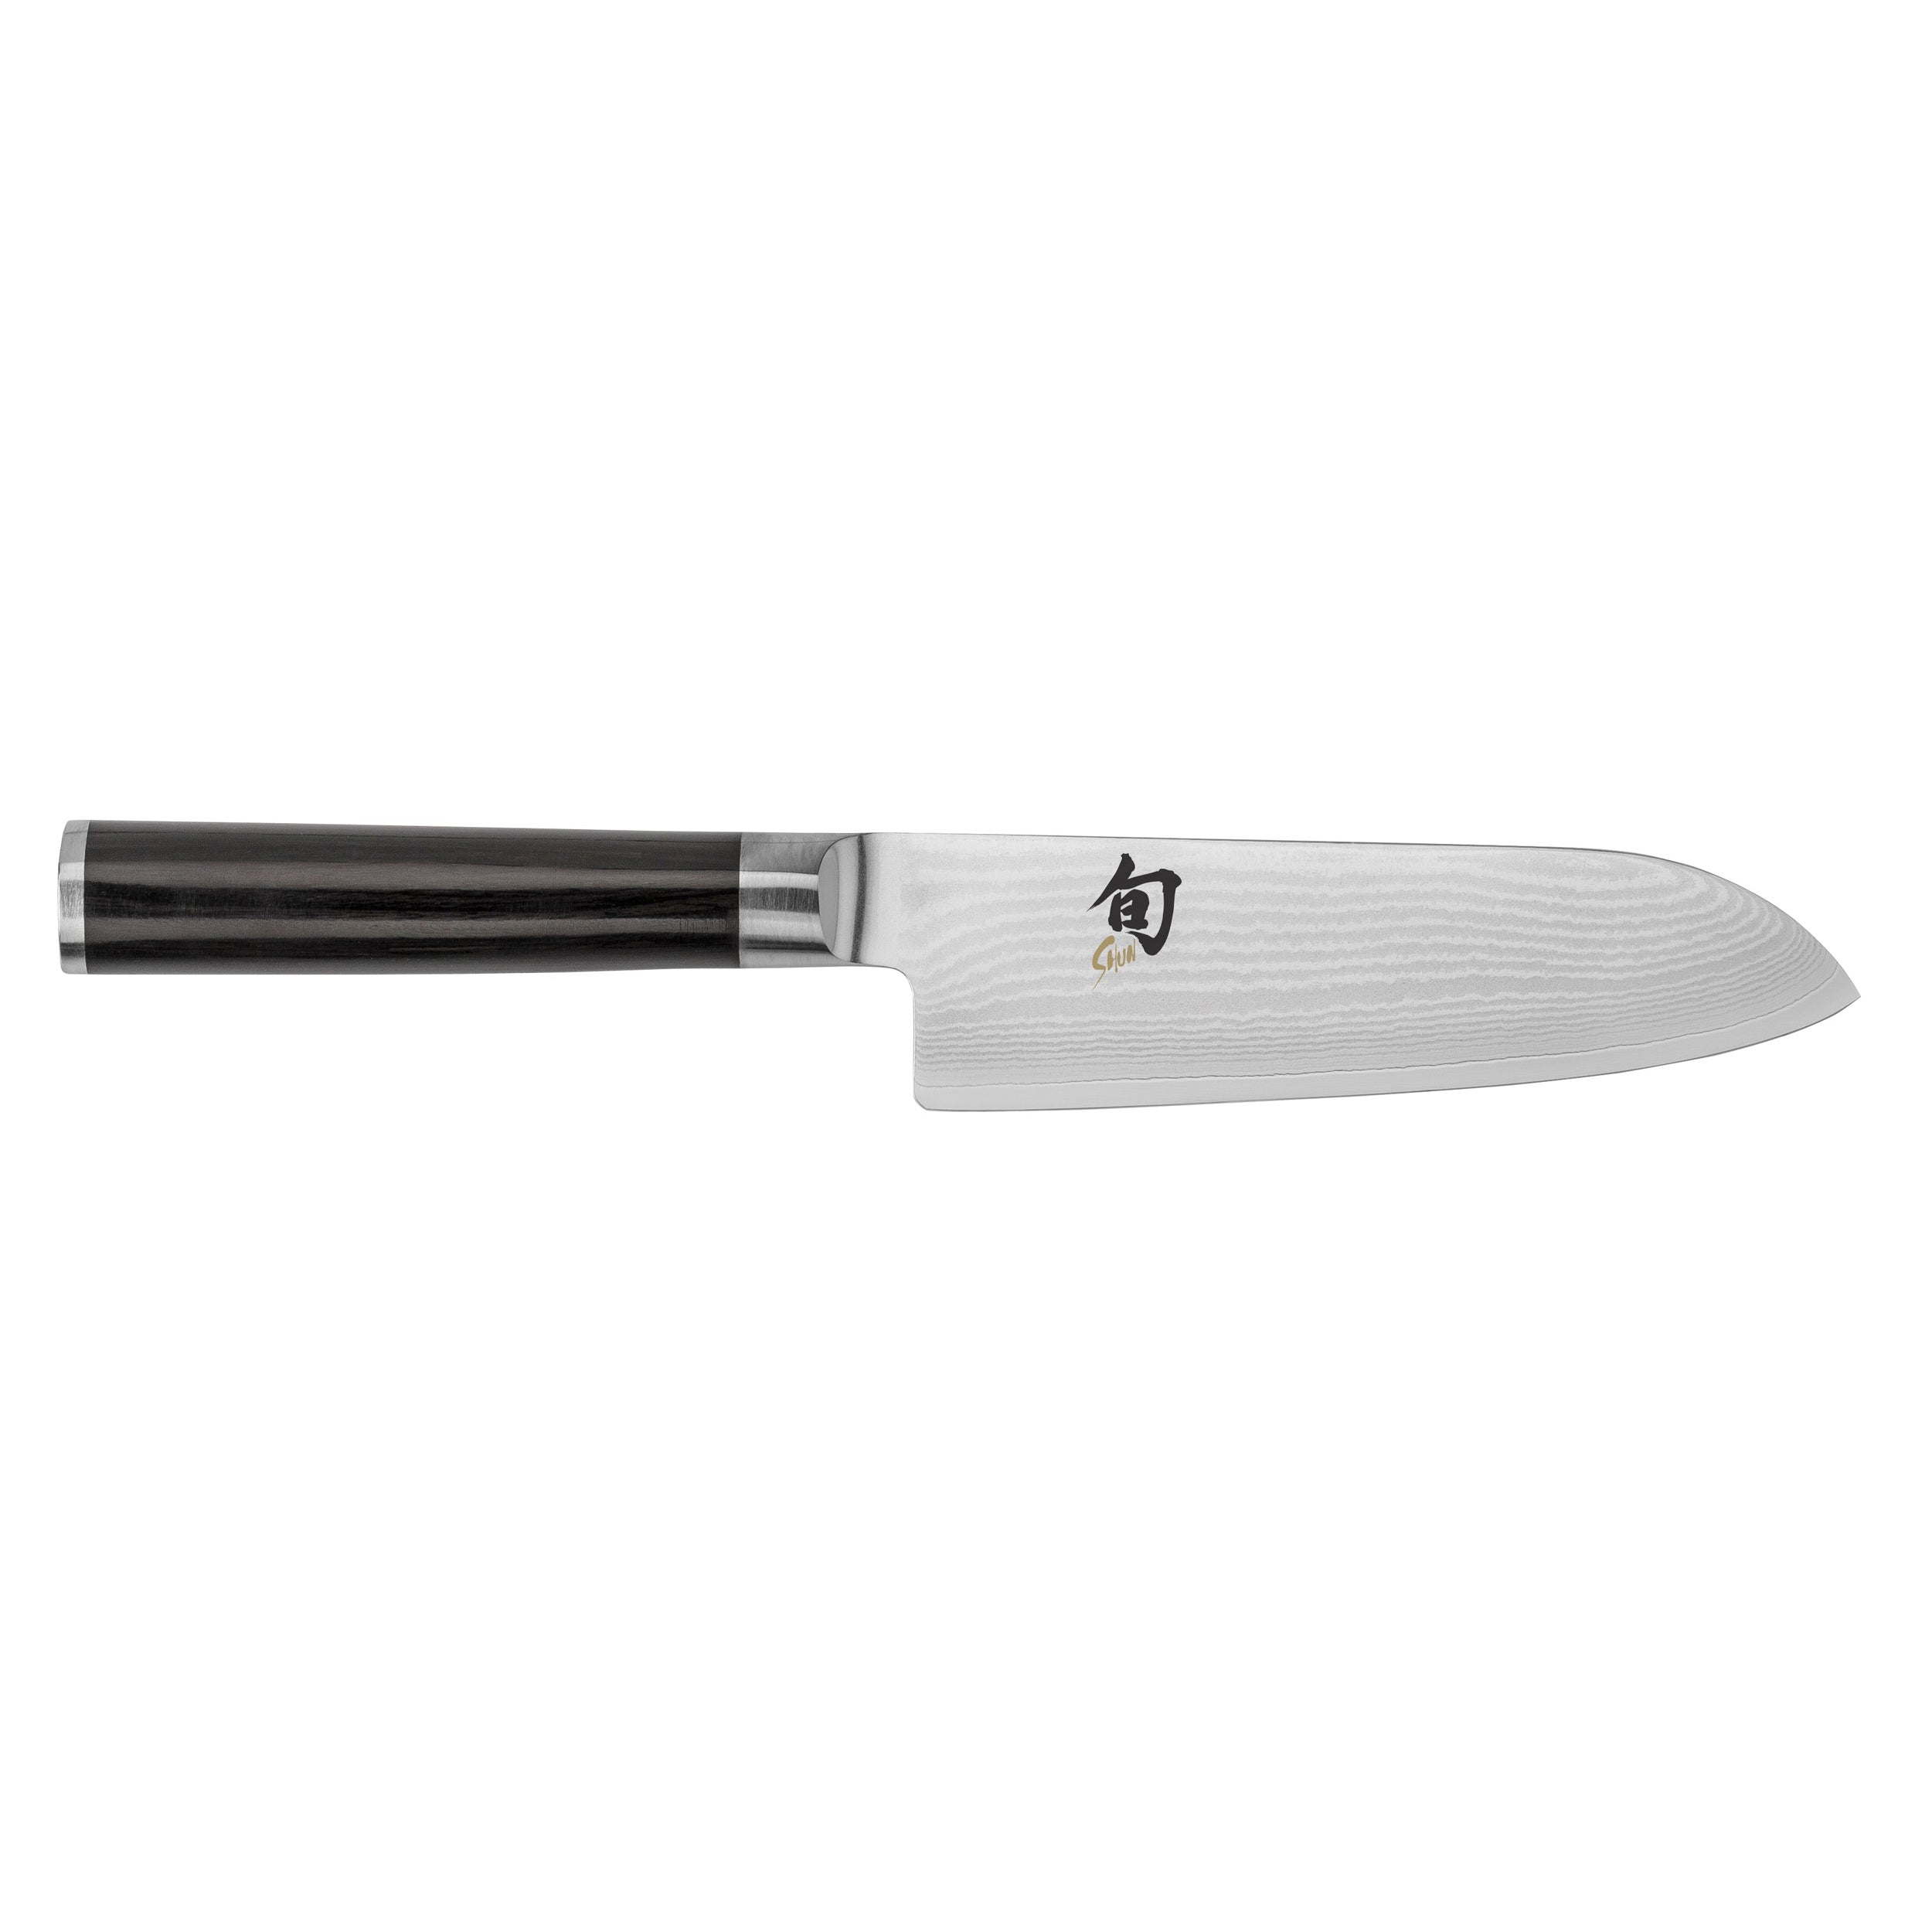 Image of ID 932742354 Shun Classic Santoku Knife 55-in